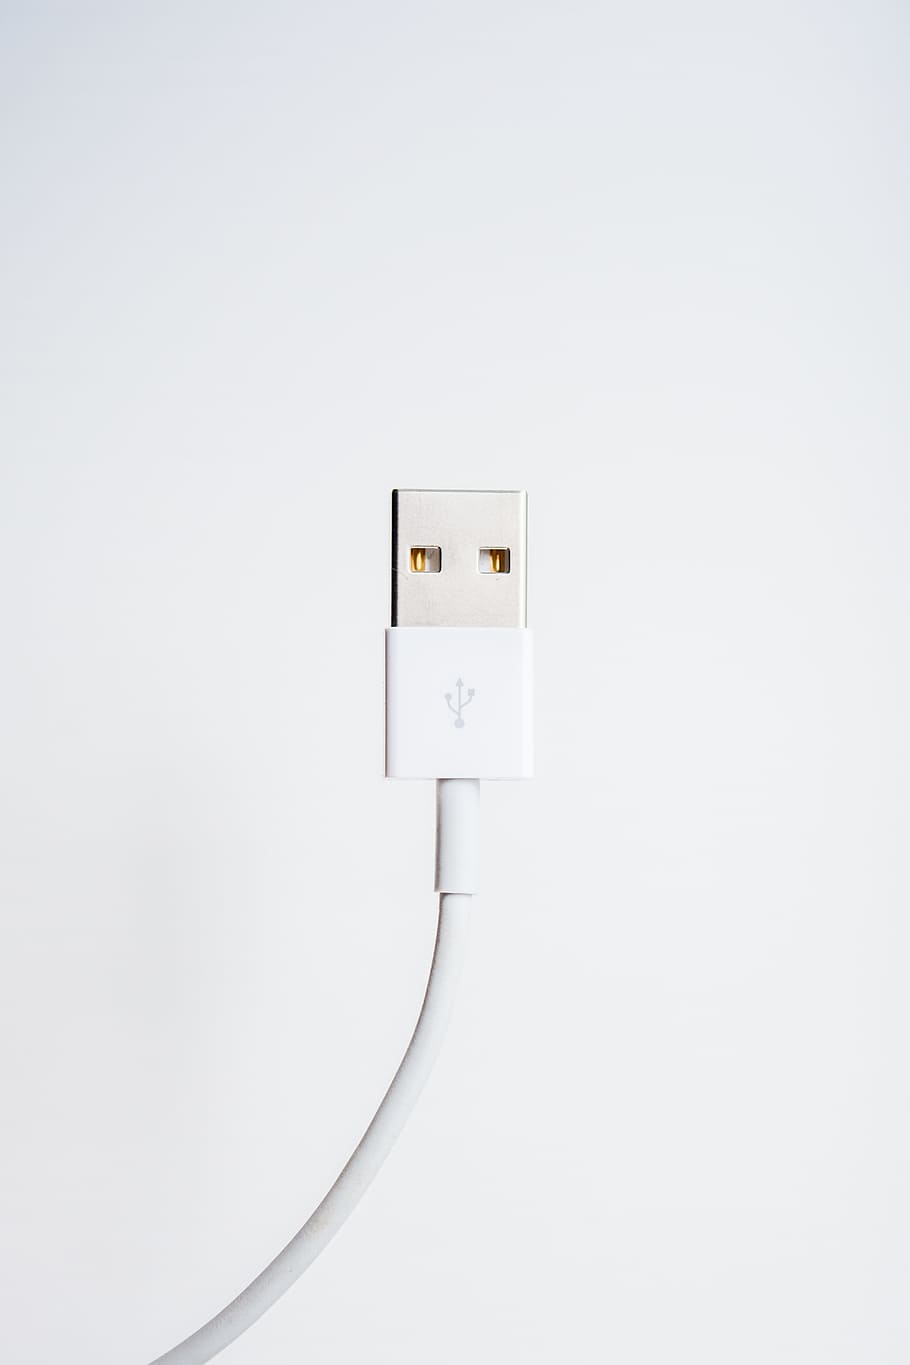 branco usb mínimo, branco, USB, mínimo, tecnologia, eletricidade, tomada, cabo, linha de energia, plugue elétrico